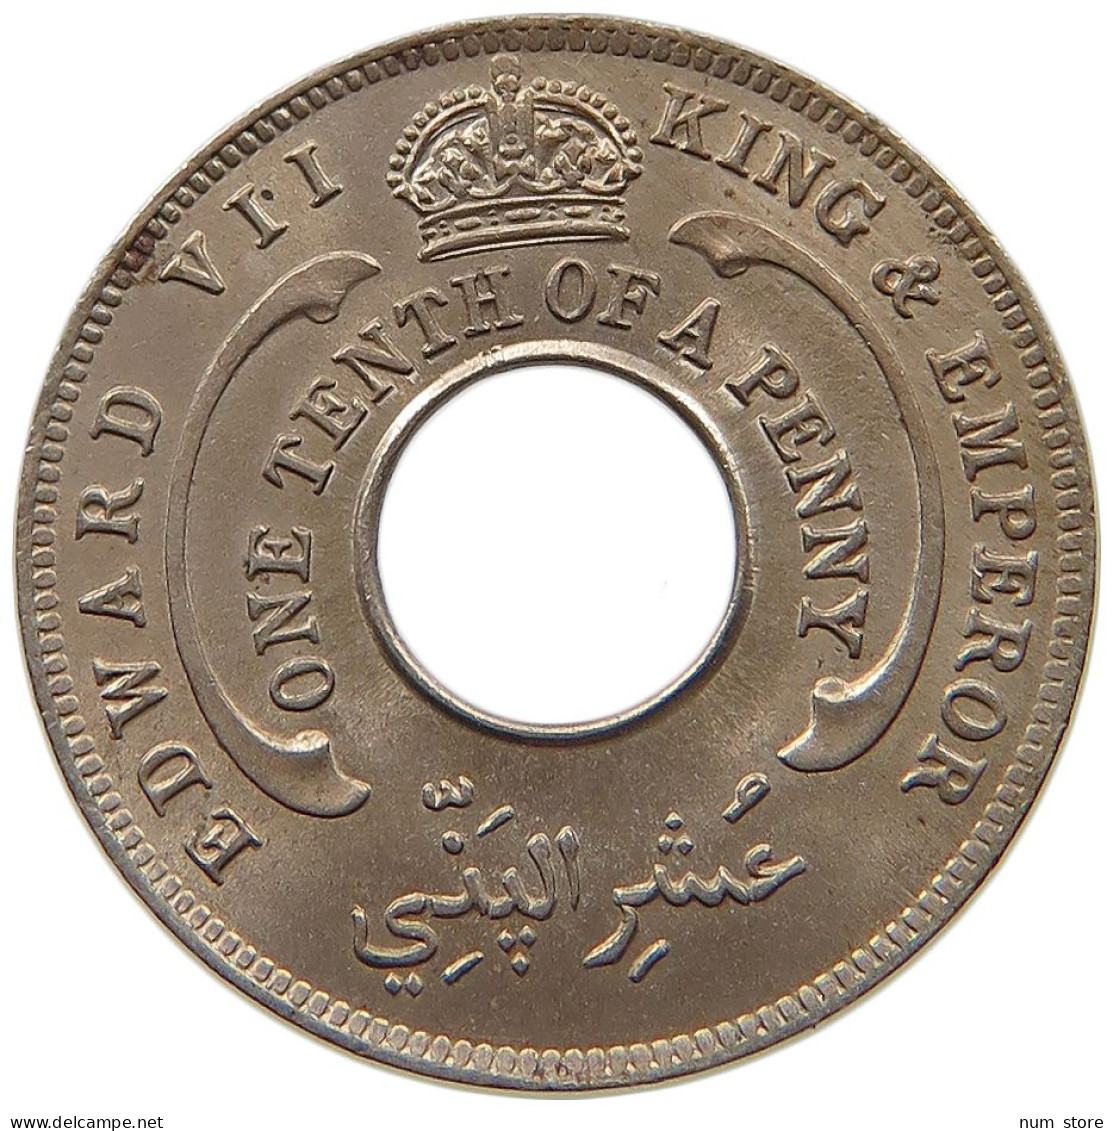 WEST AFRICA 1/10 PENNY 1908 Edward VII., 1901 - 1910 #t113 0163 - Sammlungen